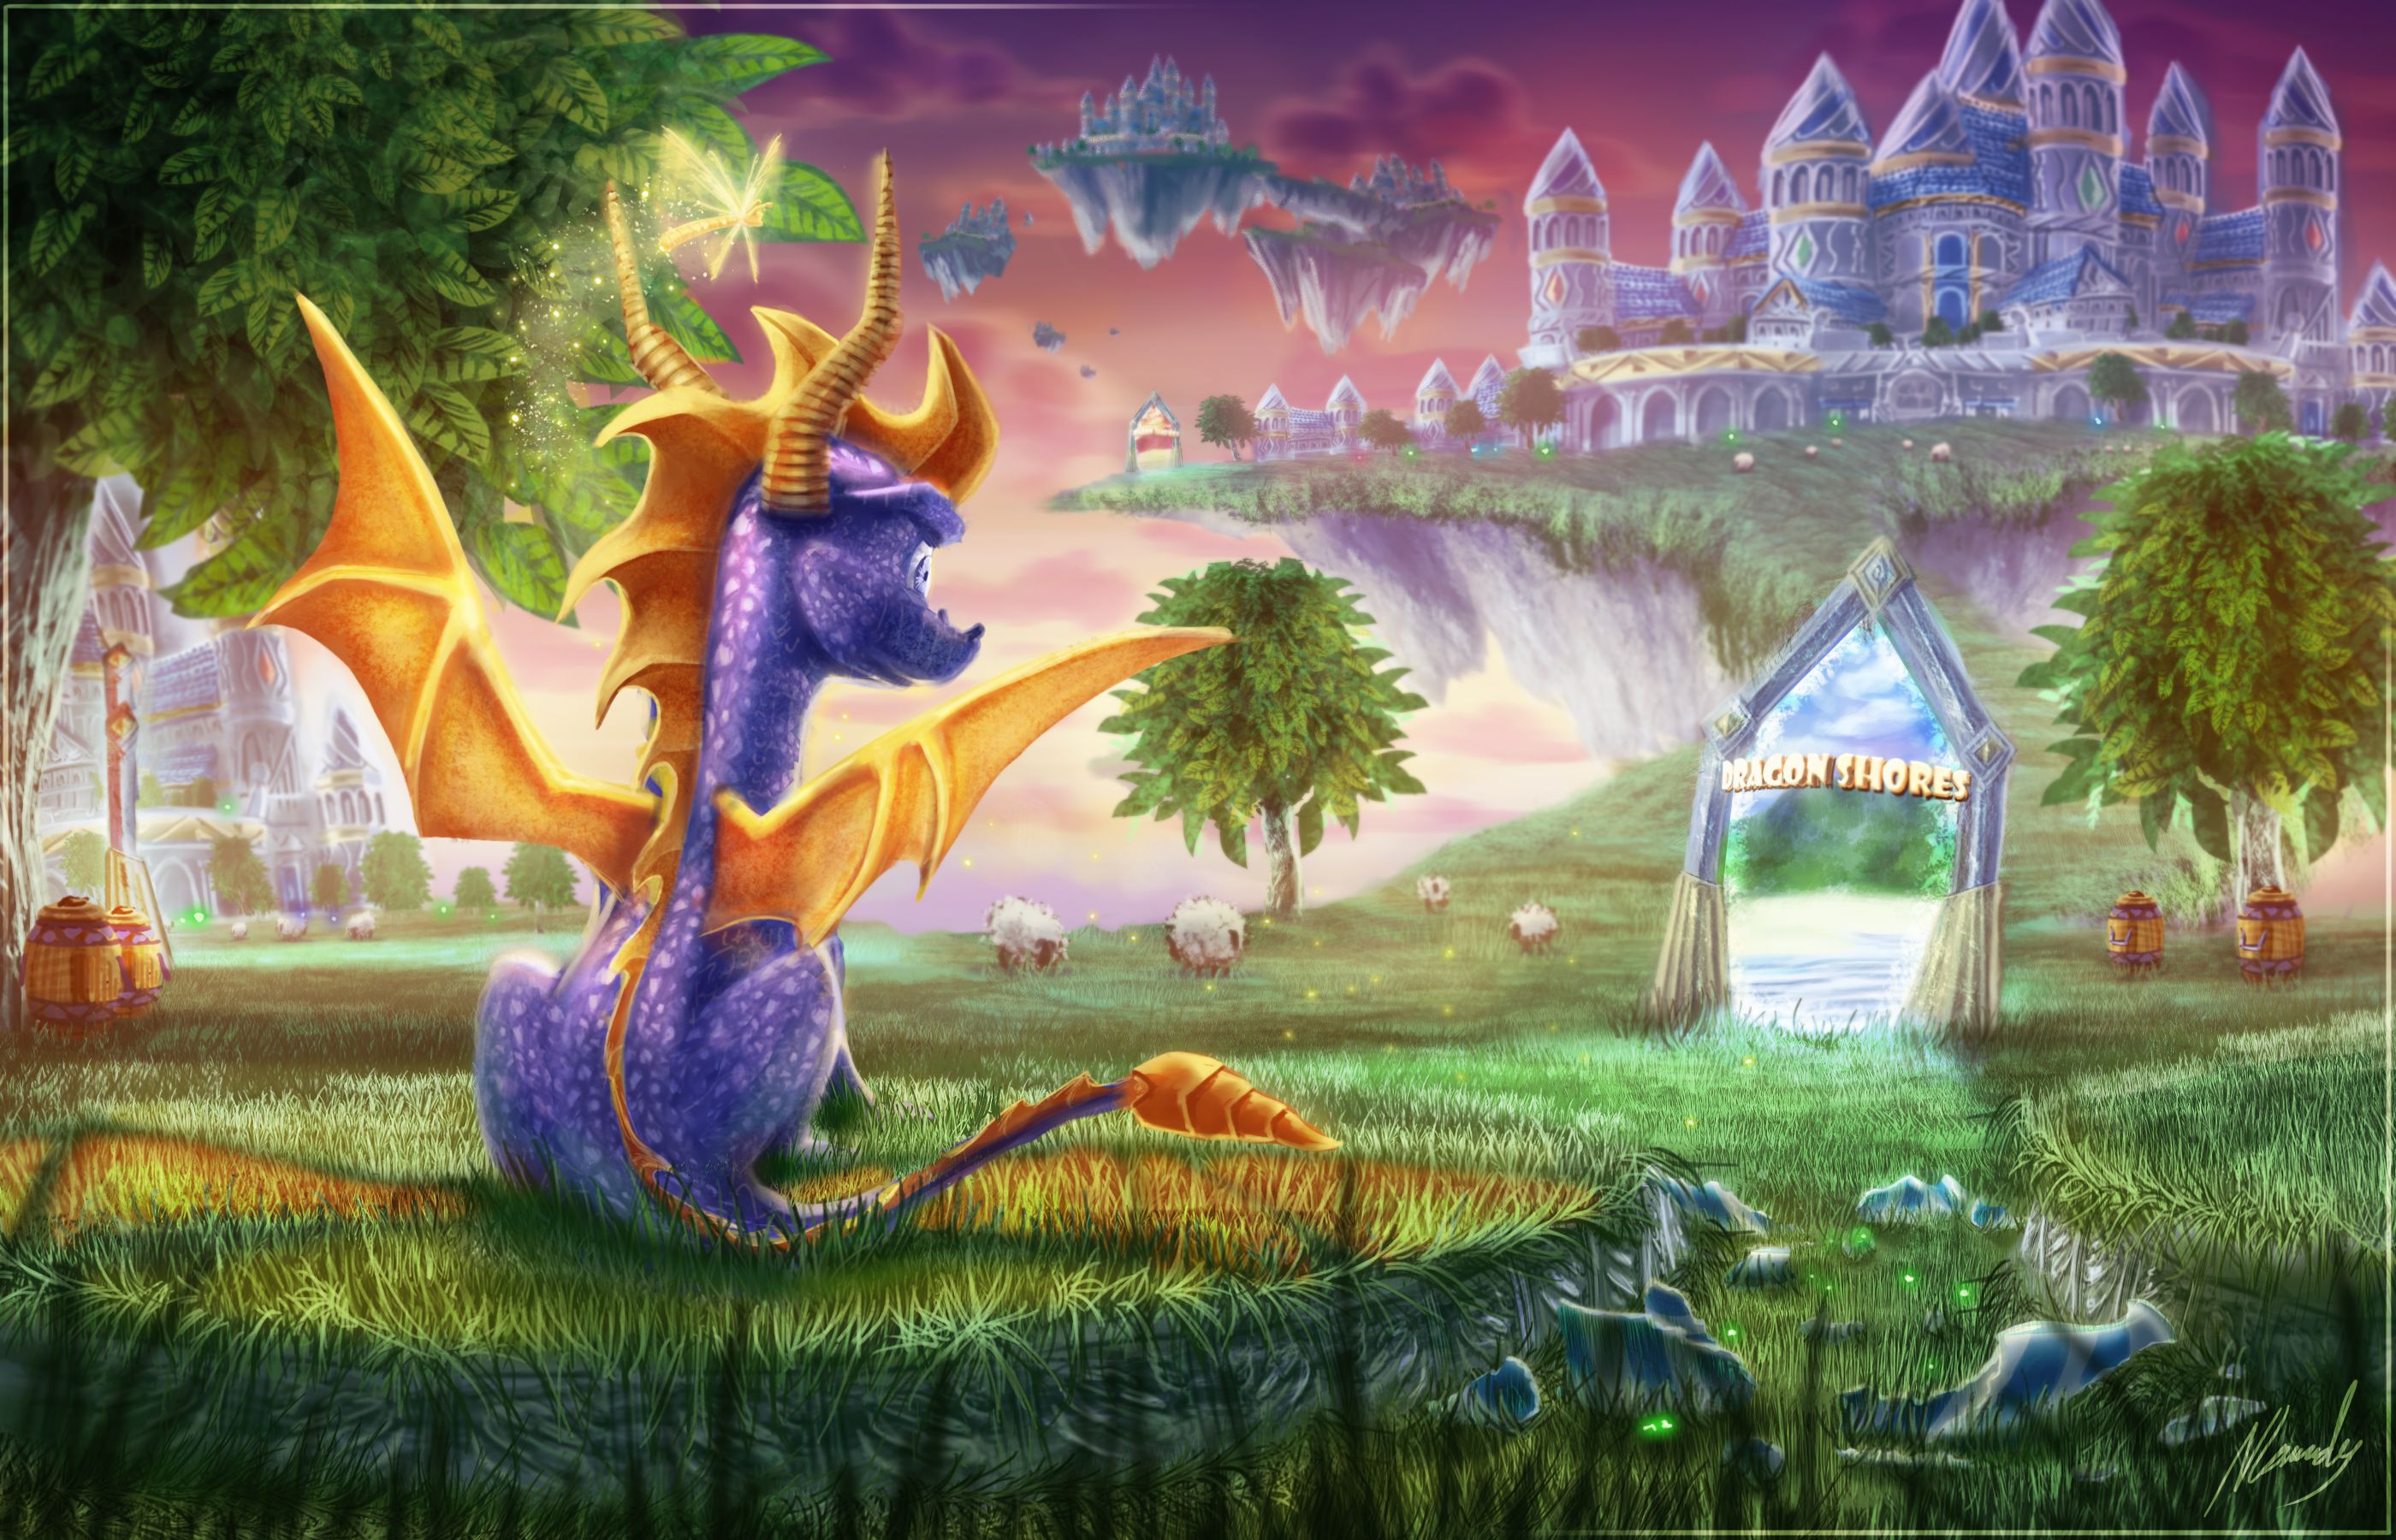 Descargar fondos de escritorio de Spyro The Dragon HD